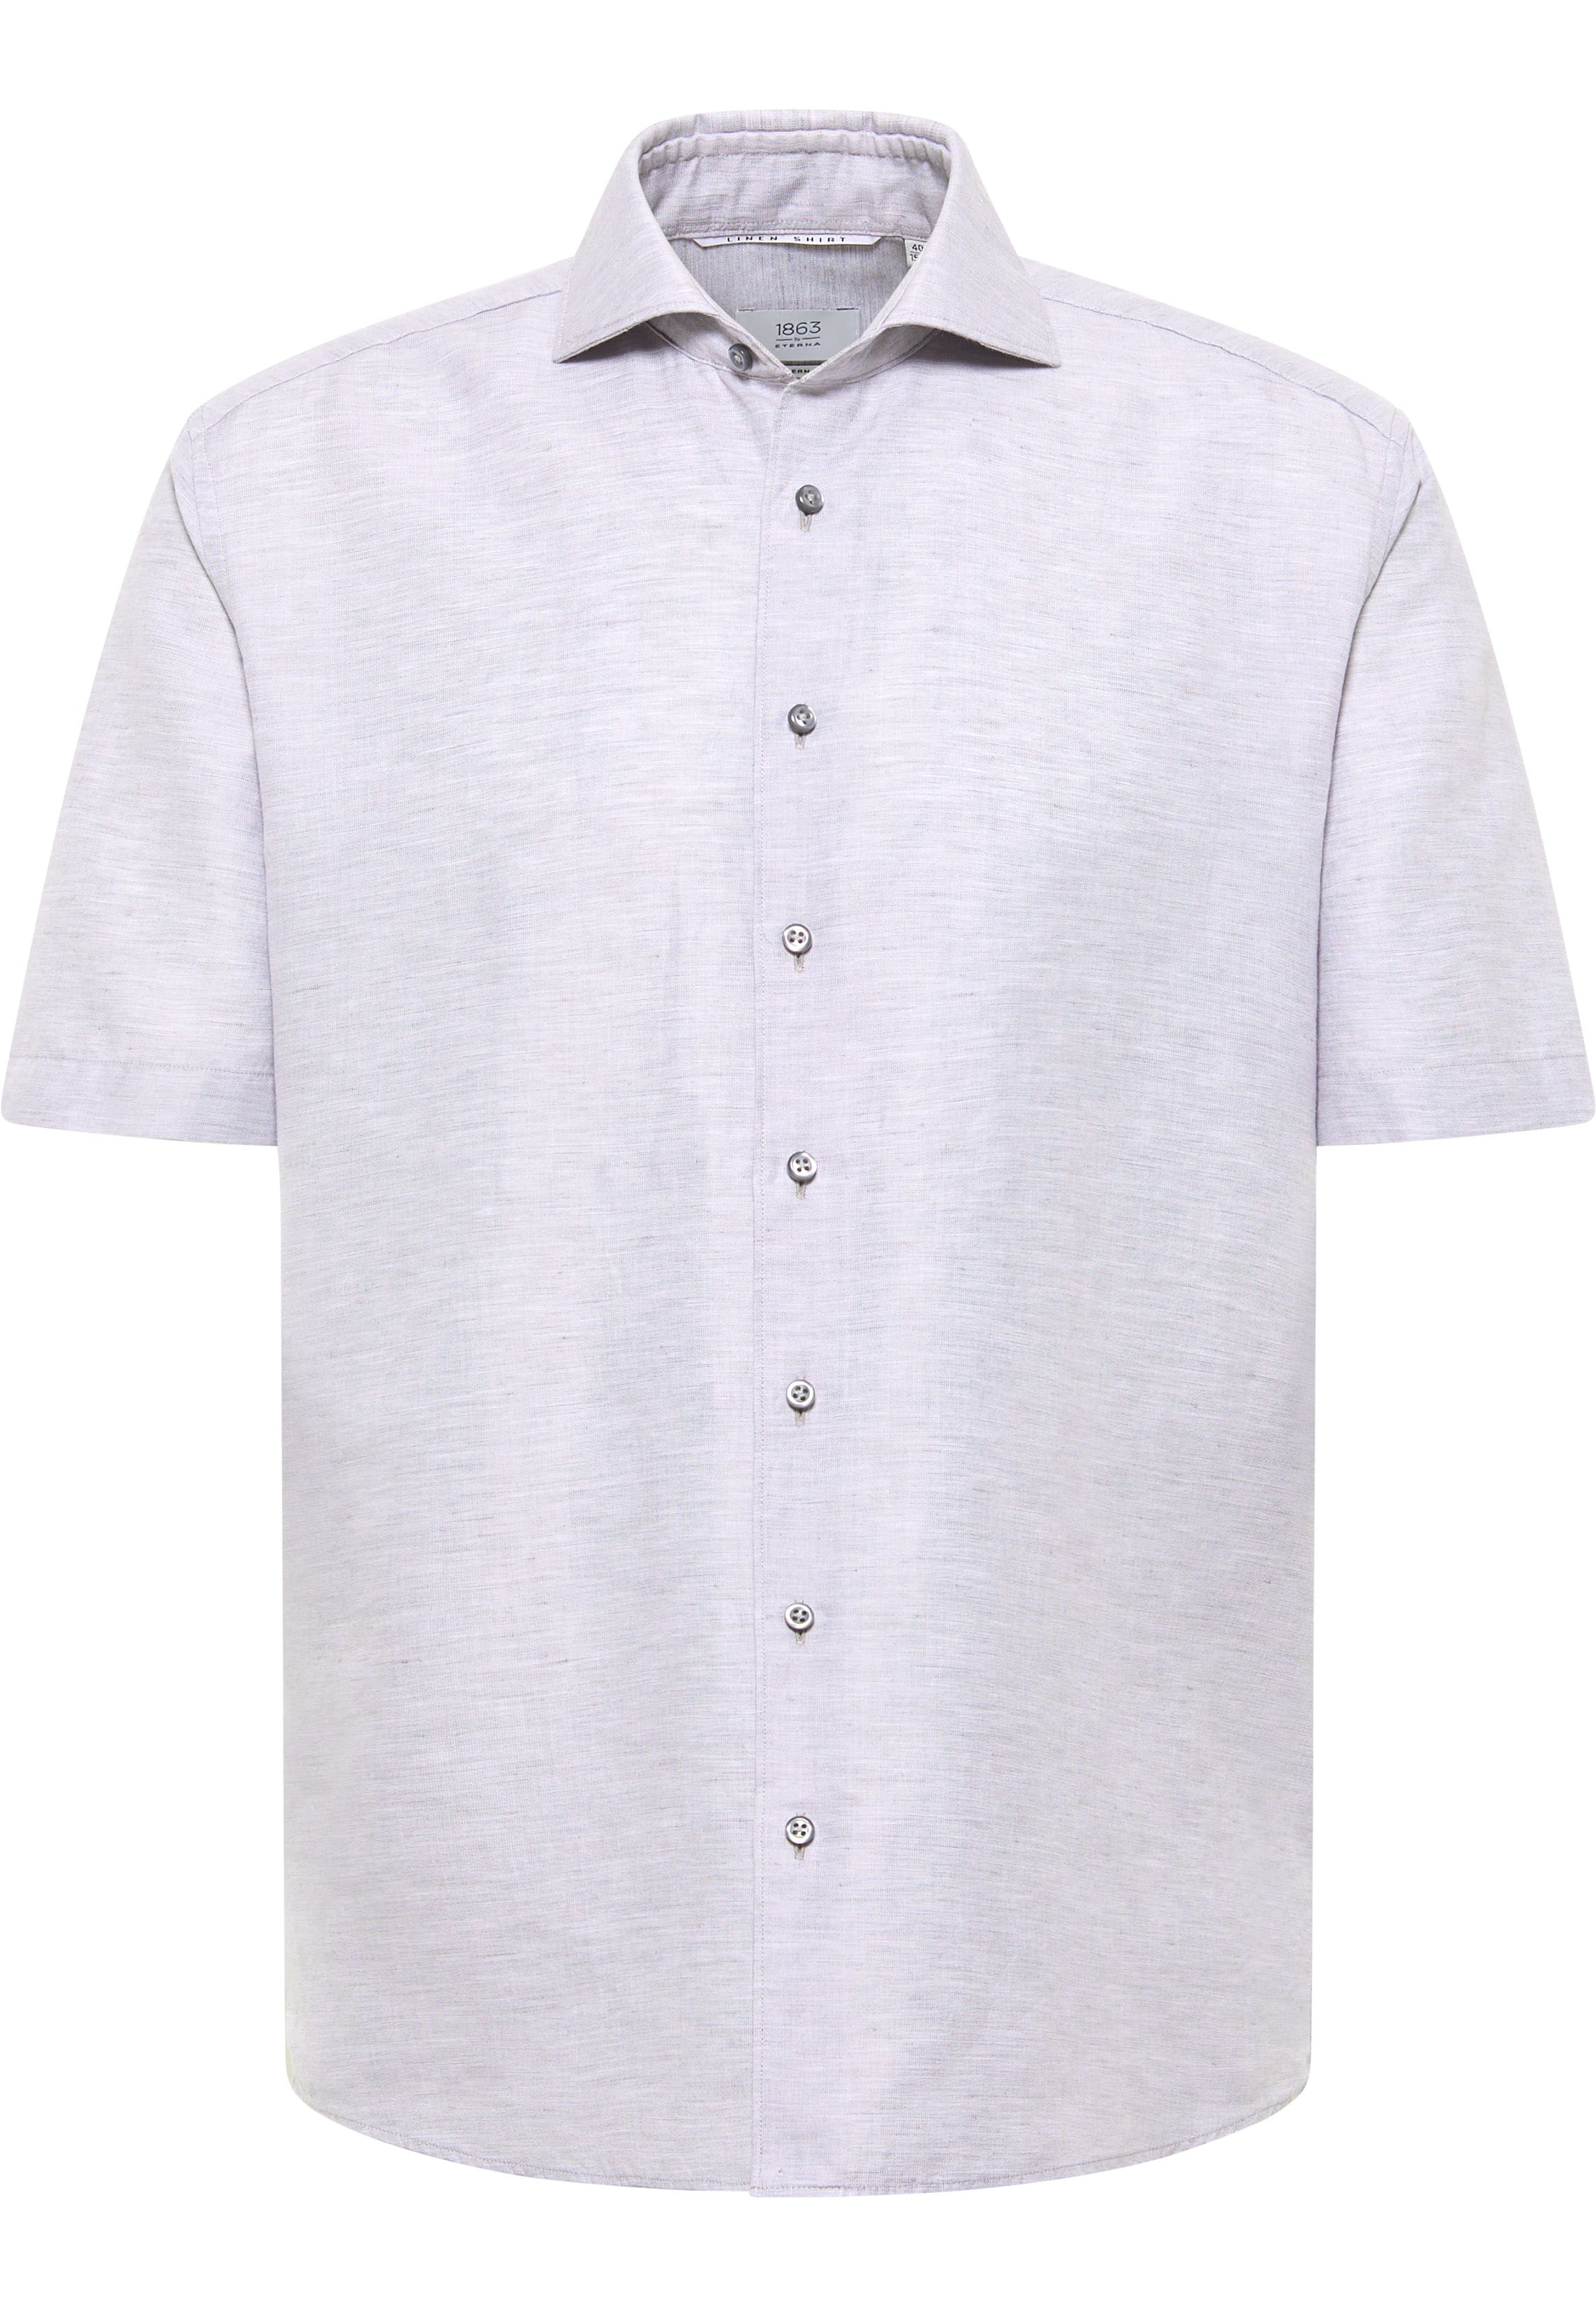 MODERN FIT Linen Shirt in grey plain